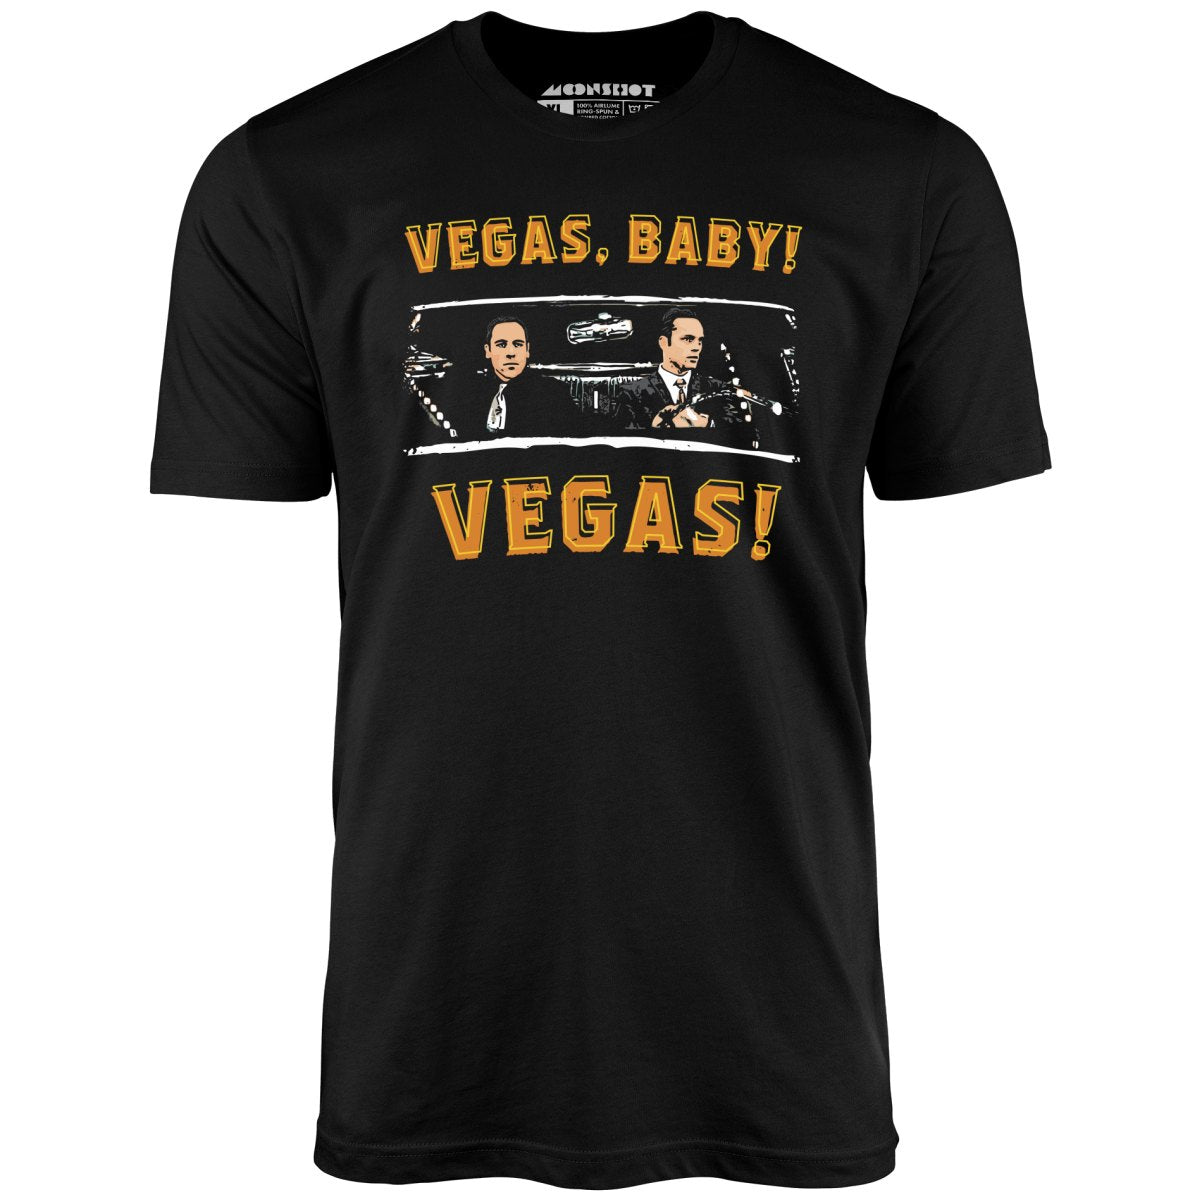 Vegas, Baby! Vegas! - Unisex T-Shirt